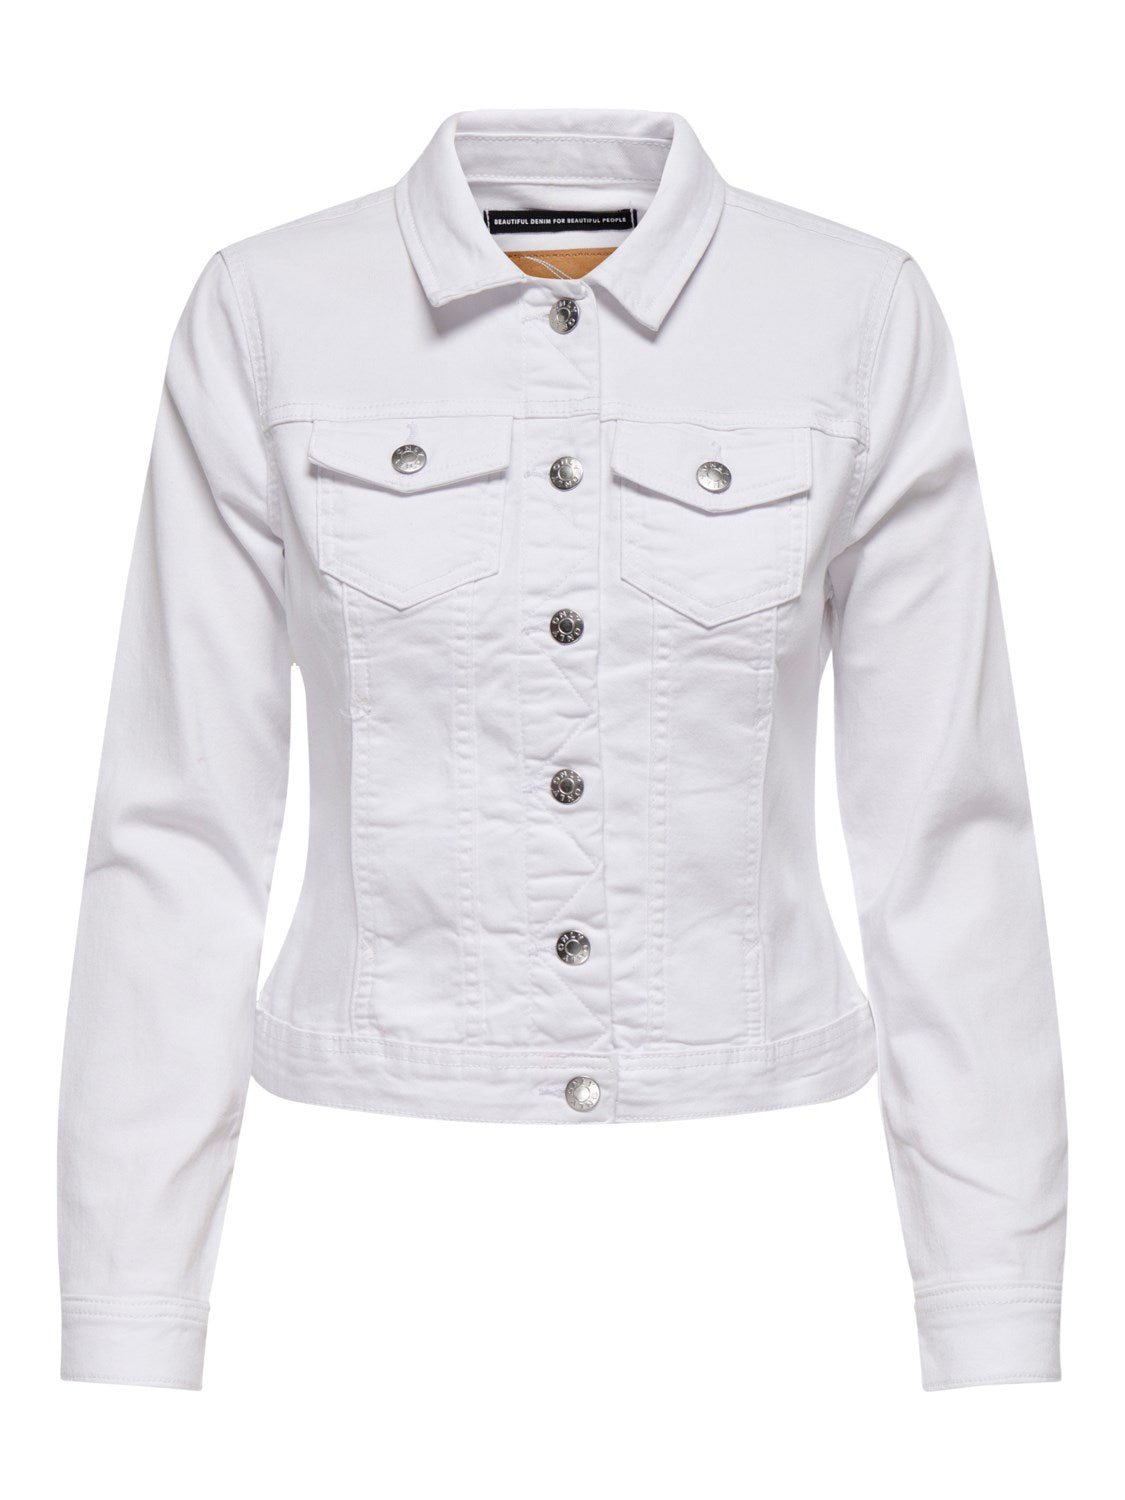 Ladies Wonder Denim Jacket-White-Front View